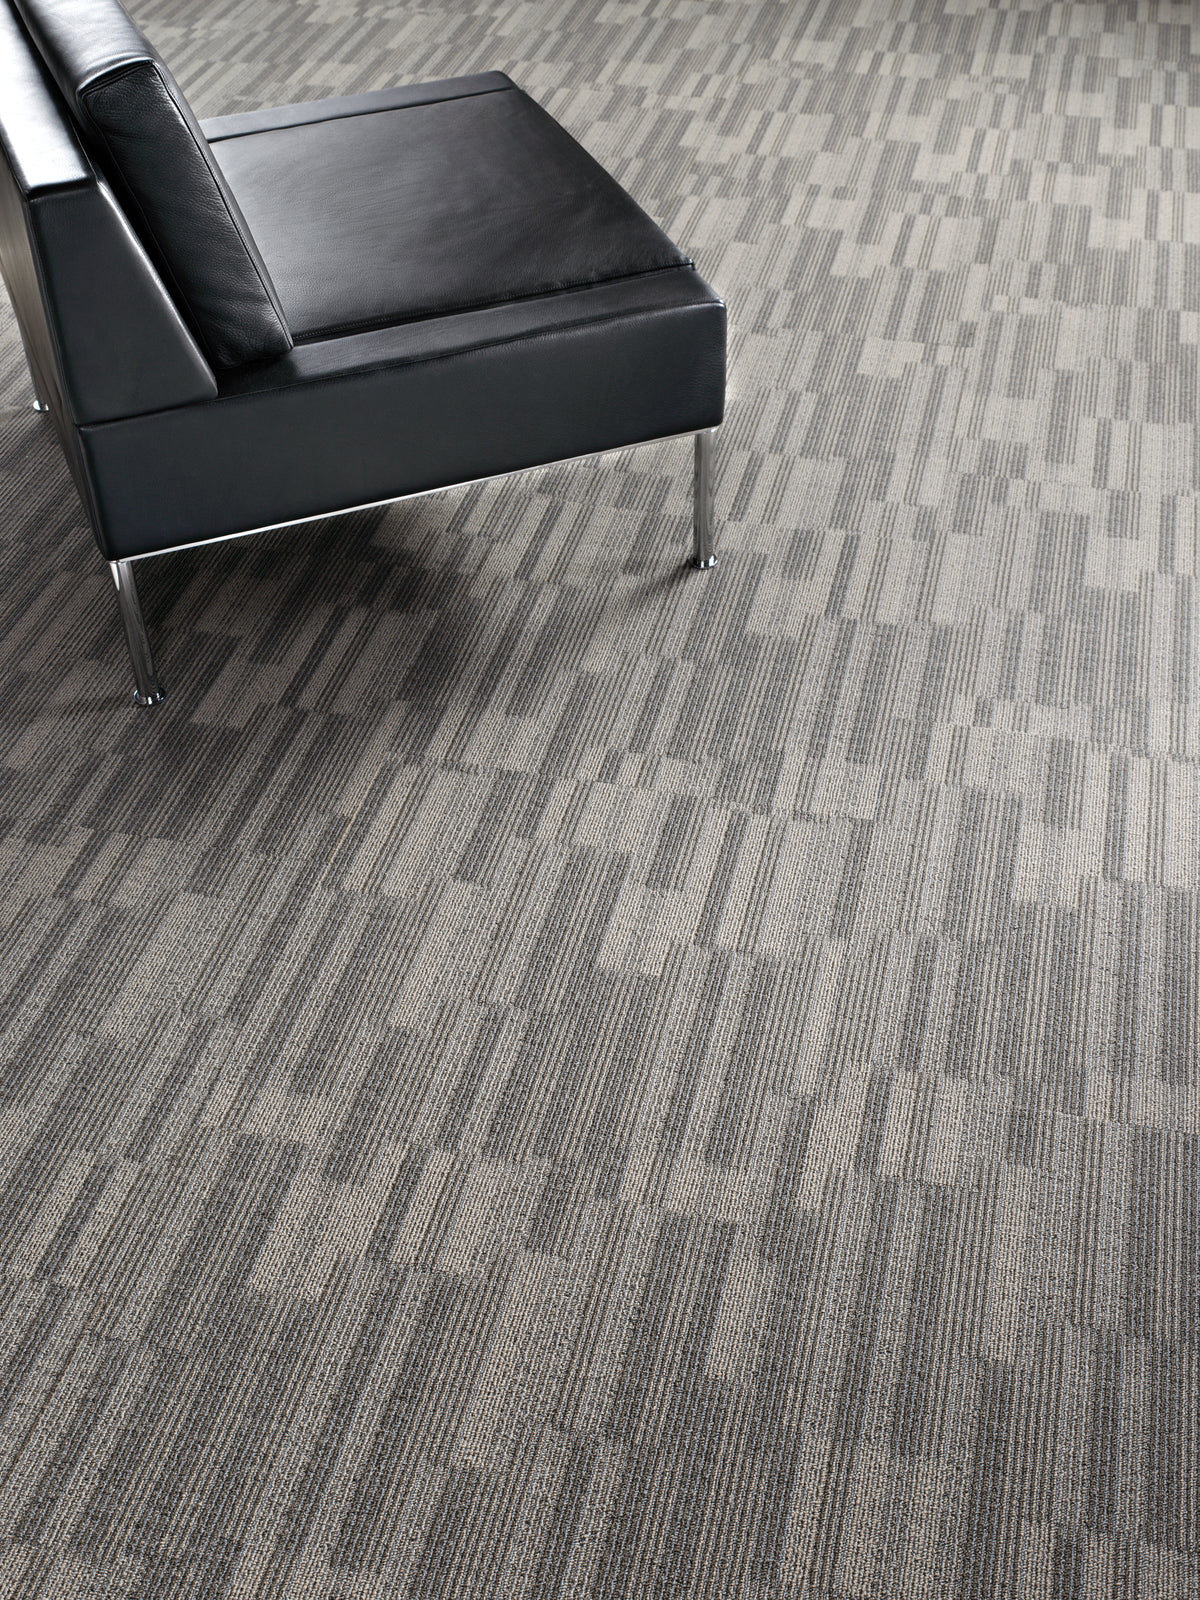 Mohawk Group - Bending Earth - Sector - Carpet Tile - Room